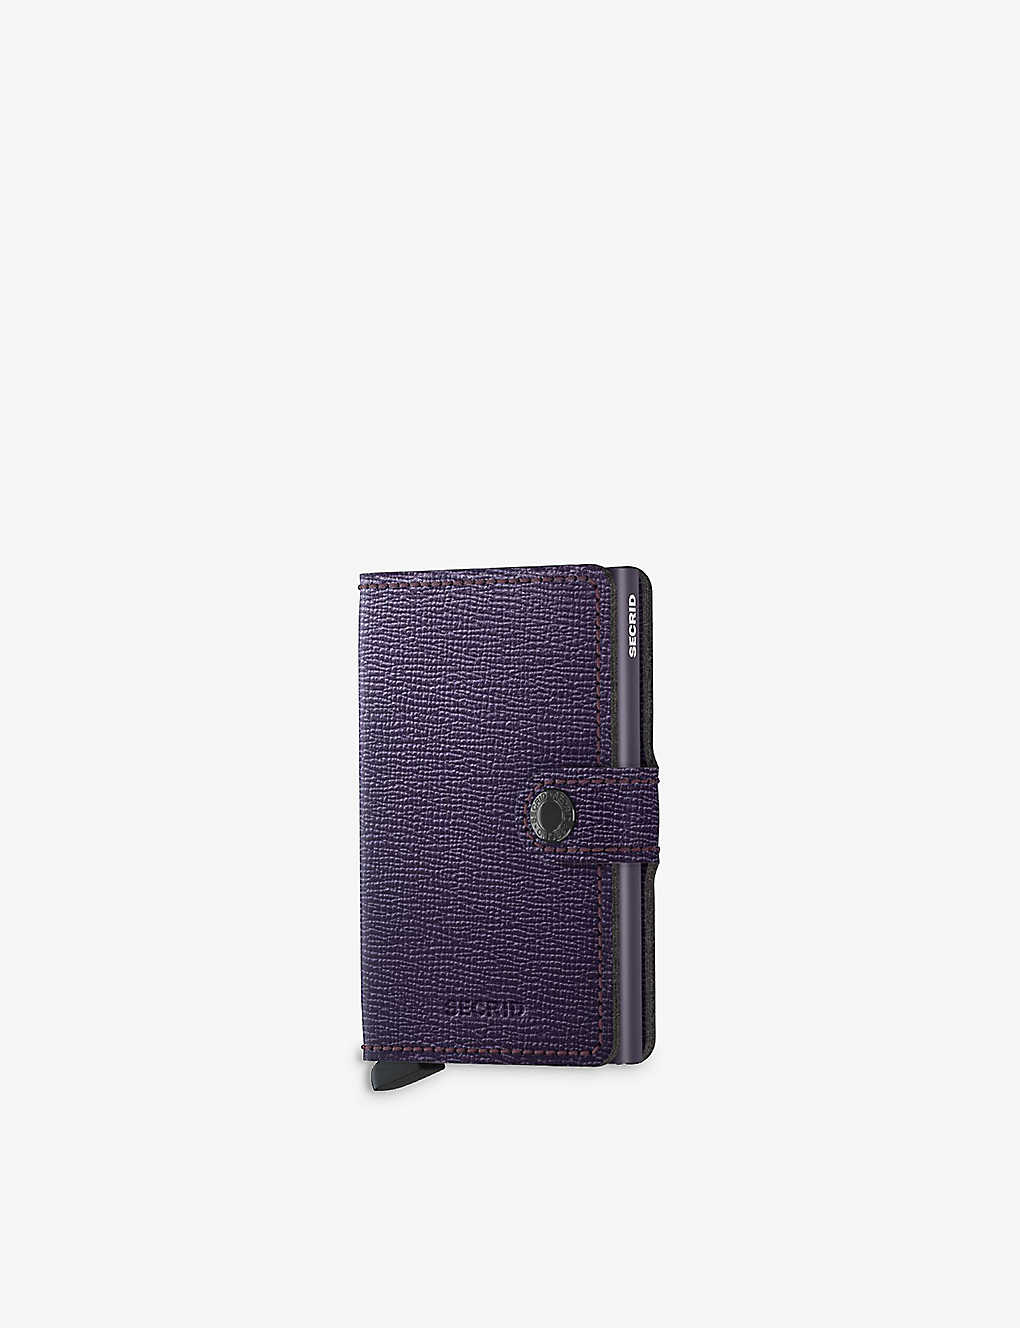 Secrid Mc-purple Miniwallet Crisple Leather And Aluminium Wallet